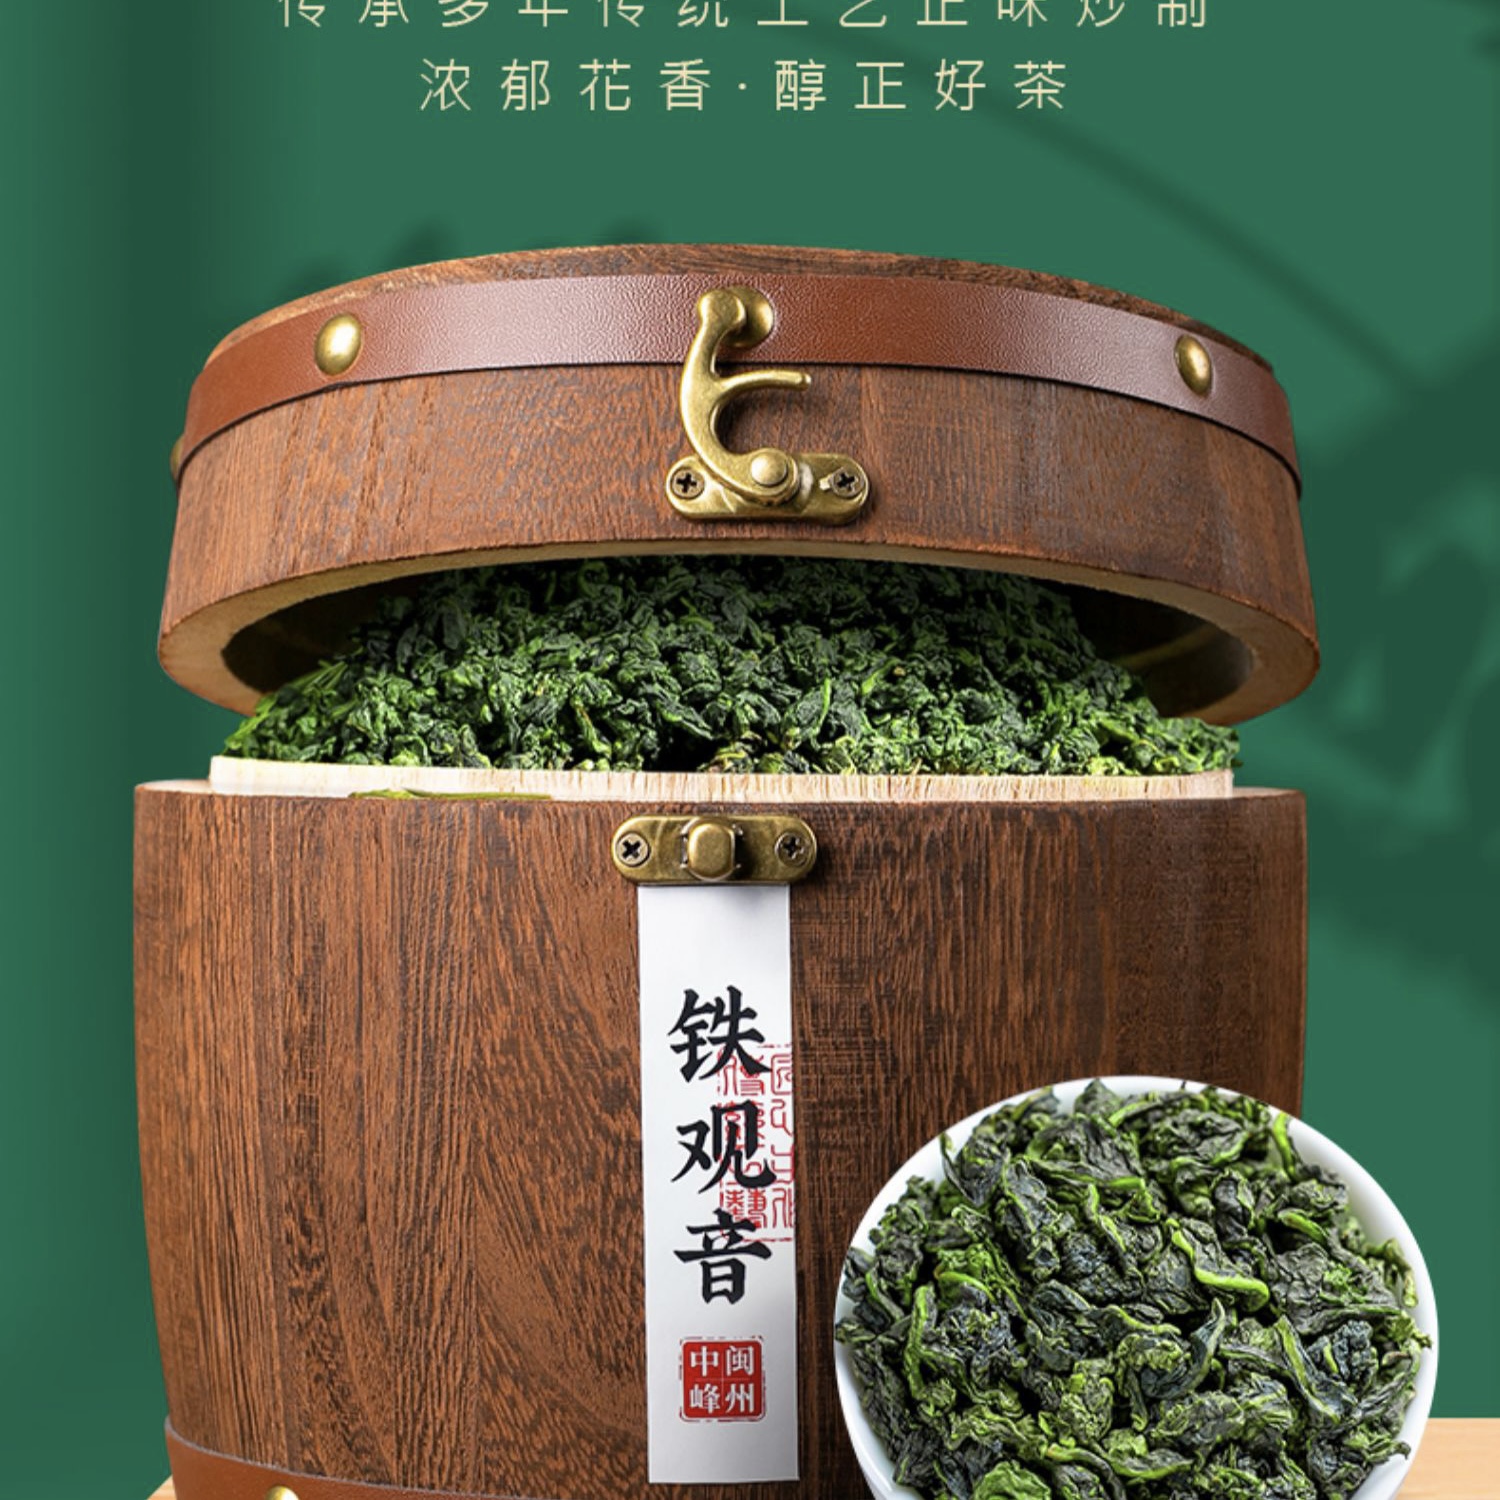 中闽峰州安溪铁观音特级浓香型新茶叶乌龙茶散装礼盒装500g